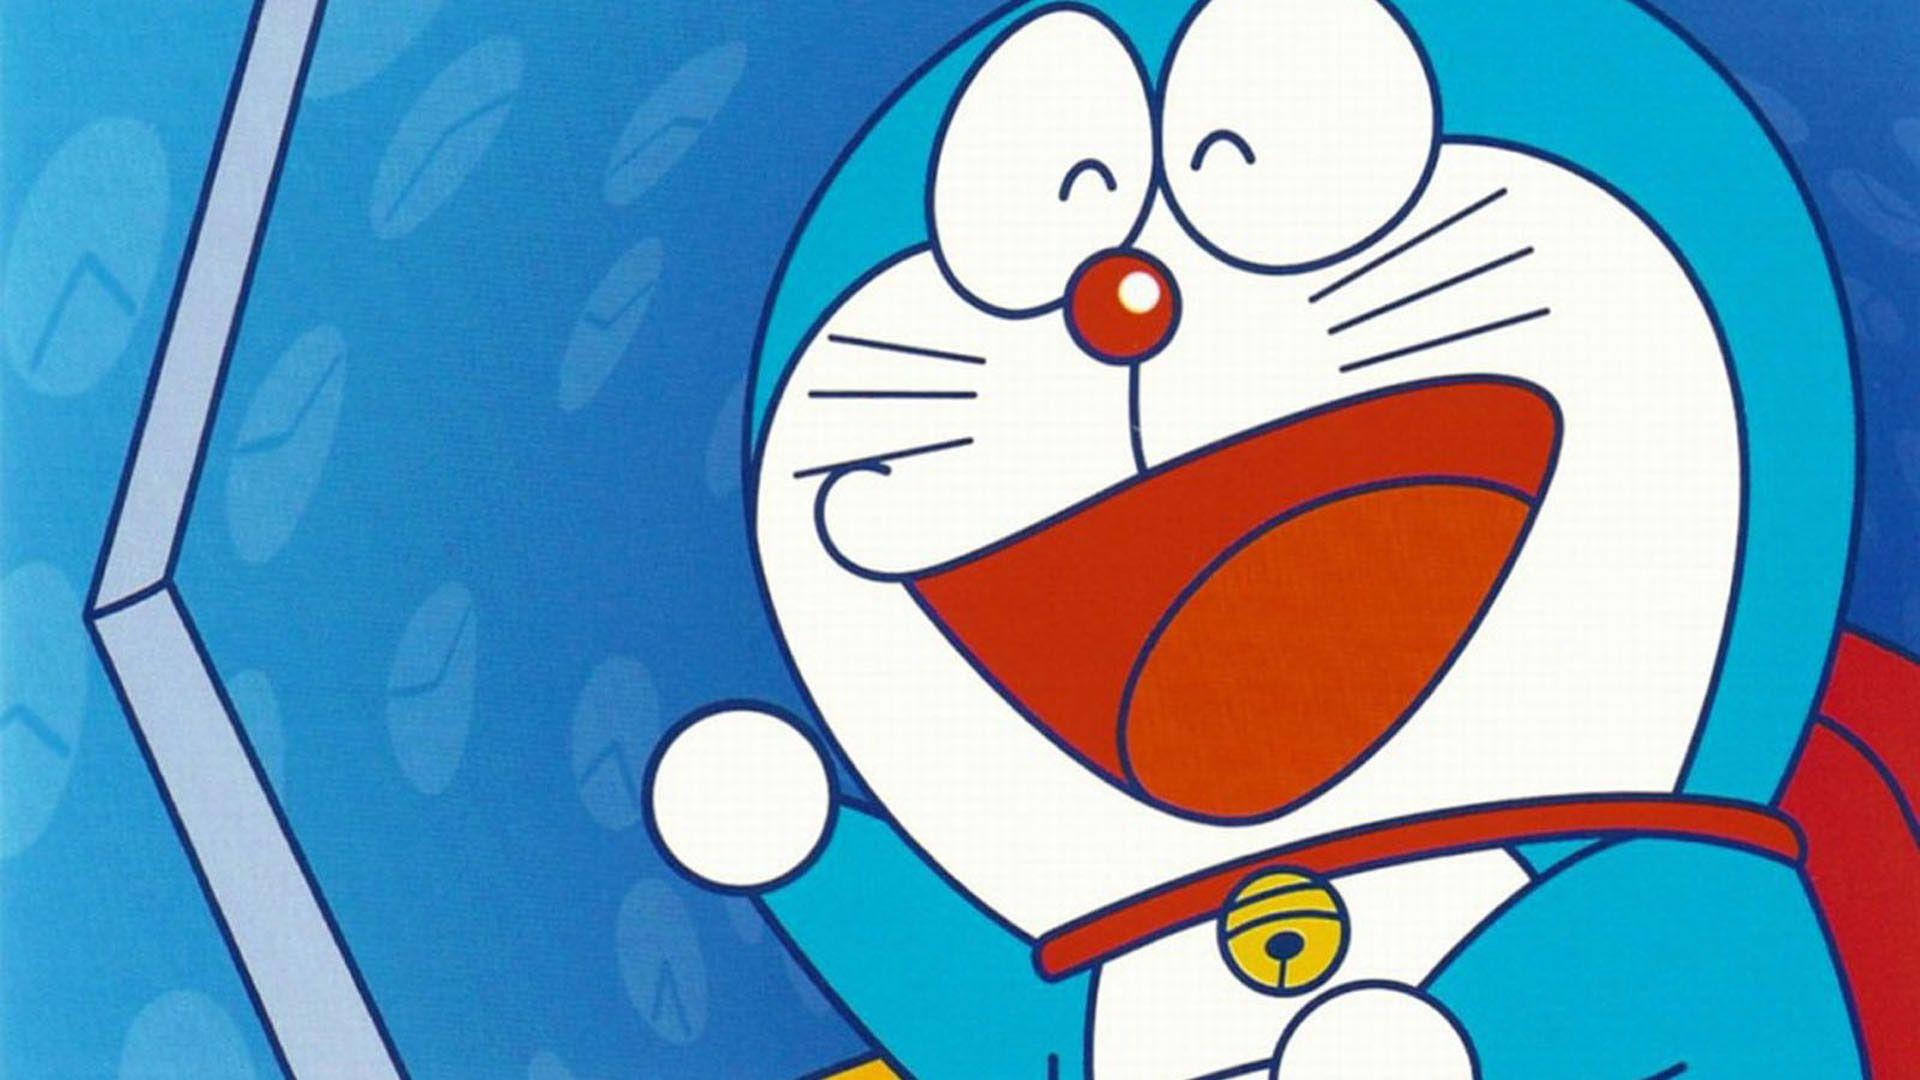 Gambar Doraemon. Movies. Free credit report, Credit